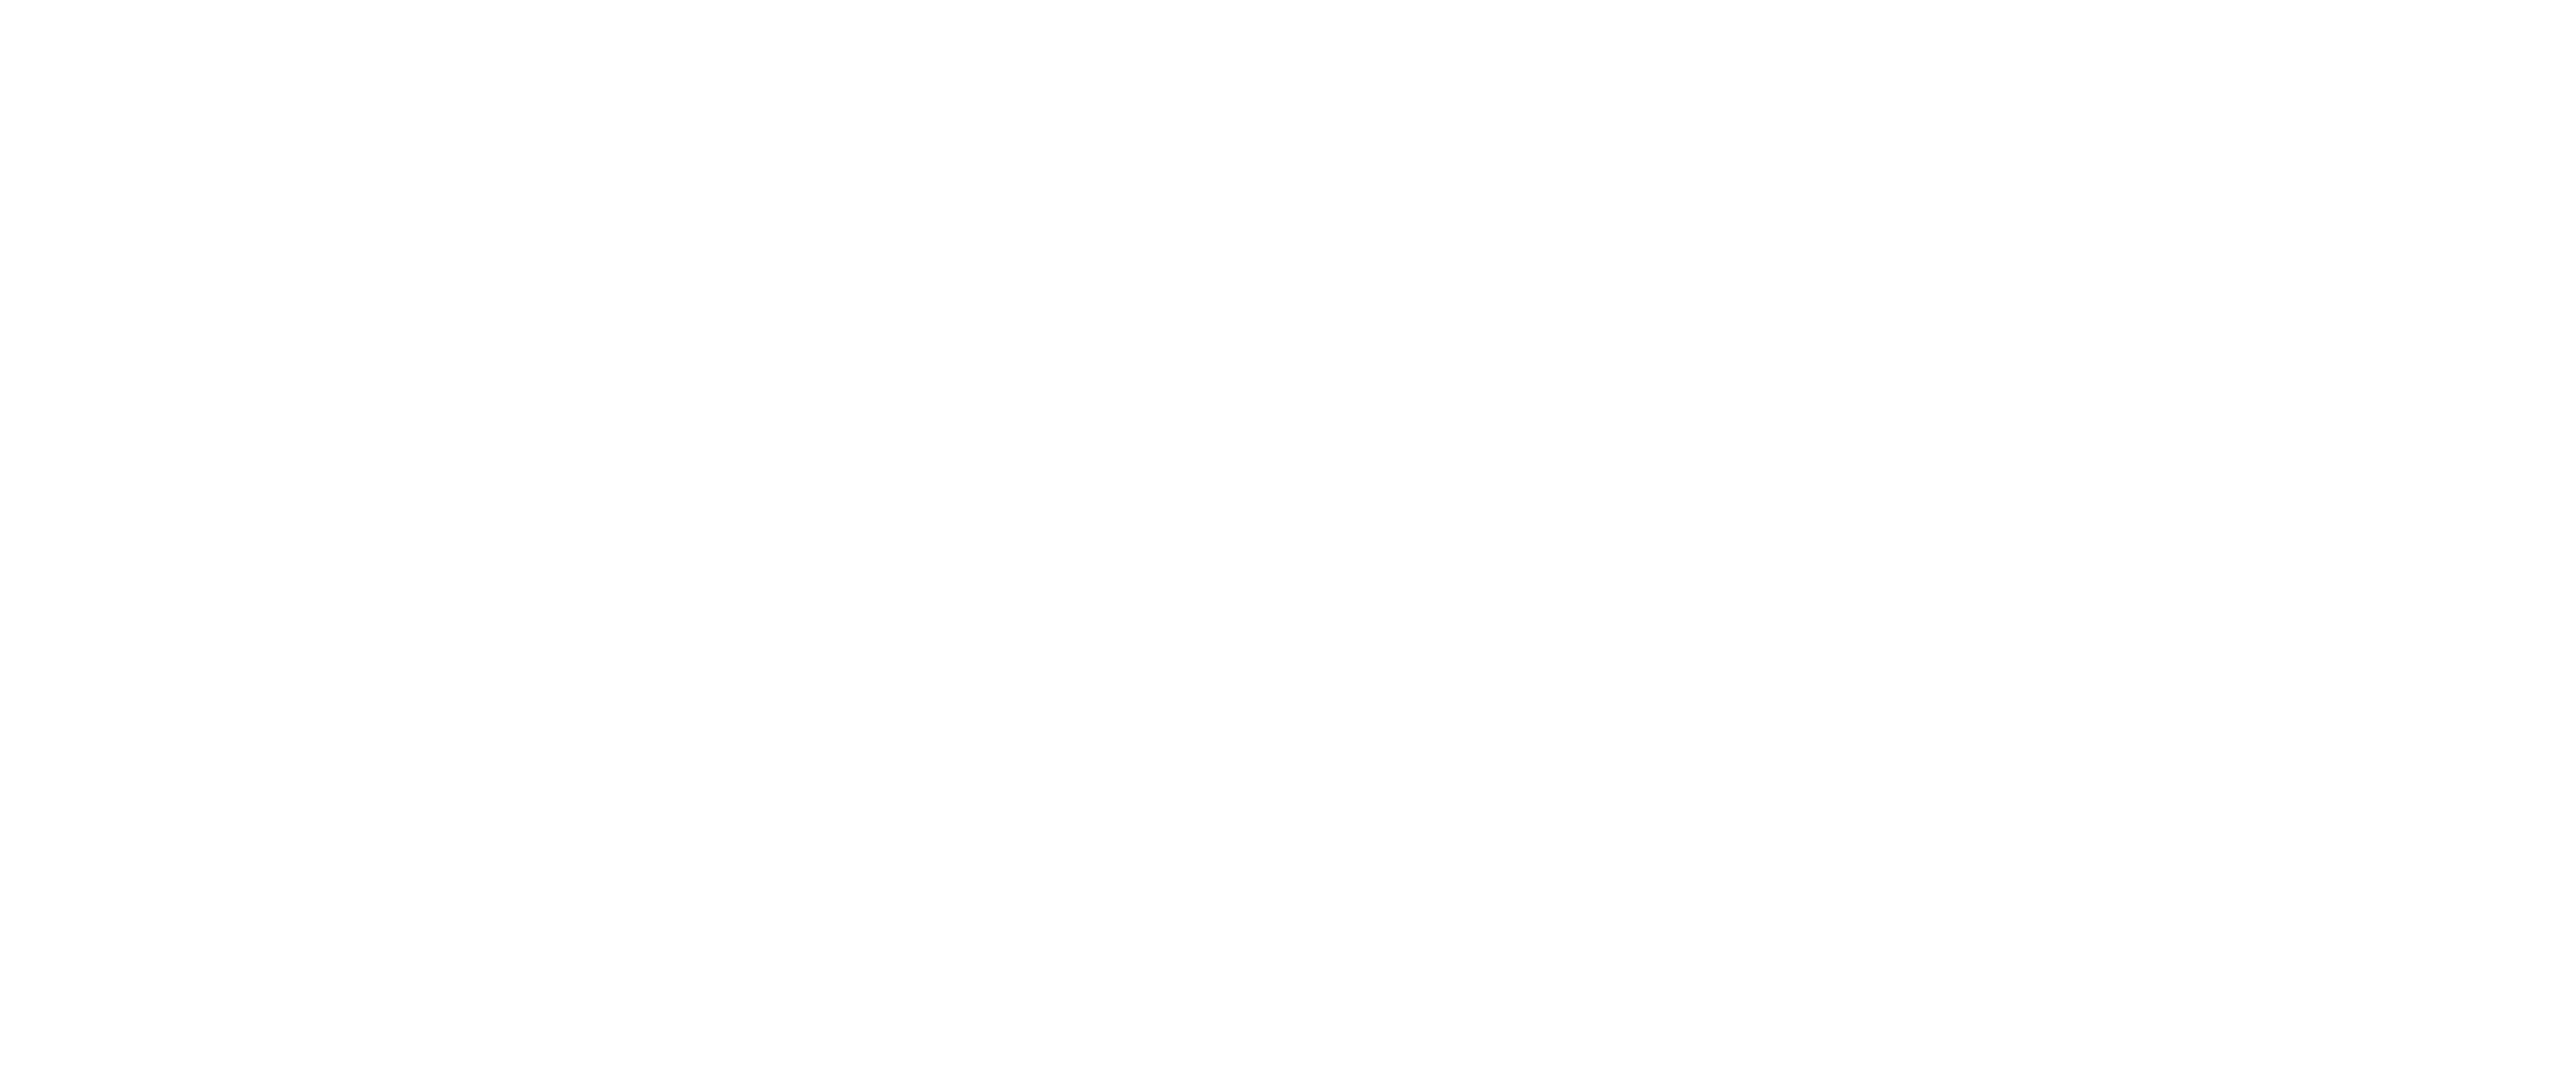 mayaselectronics.bz